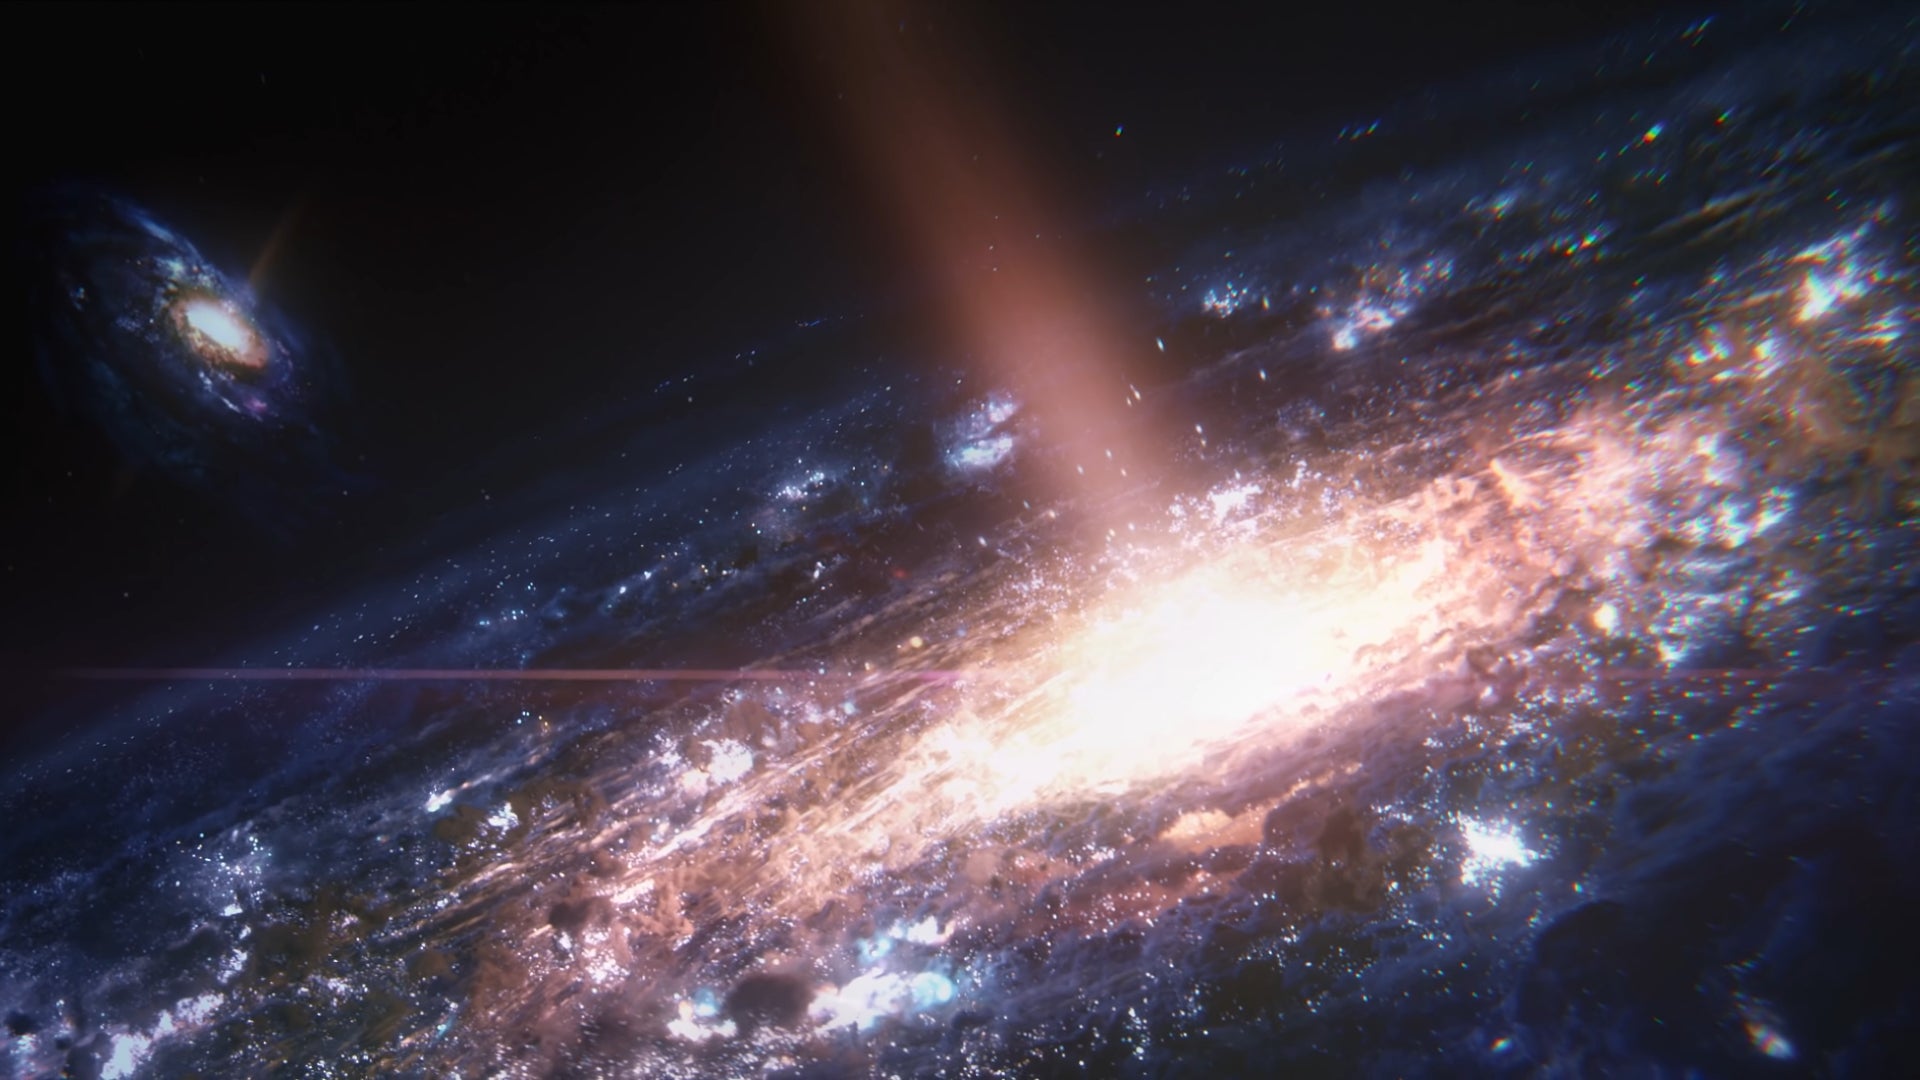 Млечный Путь На Переднем Плане И Галактика Андромеды На Заднем Плане В Первом Кадре Тизер-Трейлера Mass Effect 5.